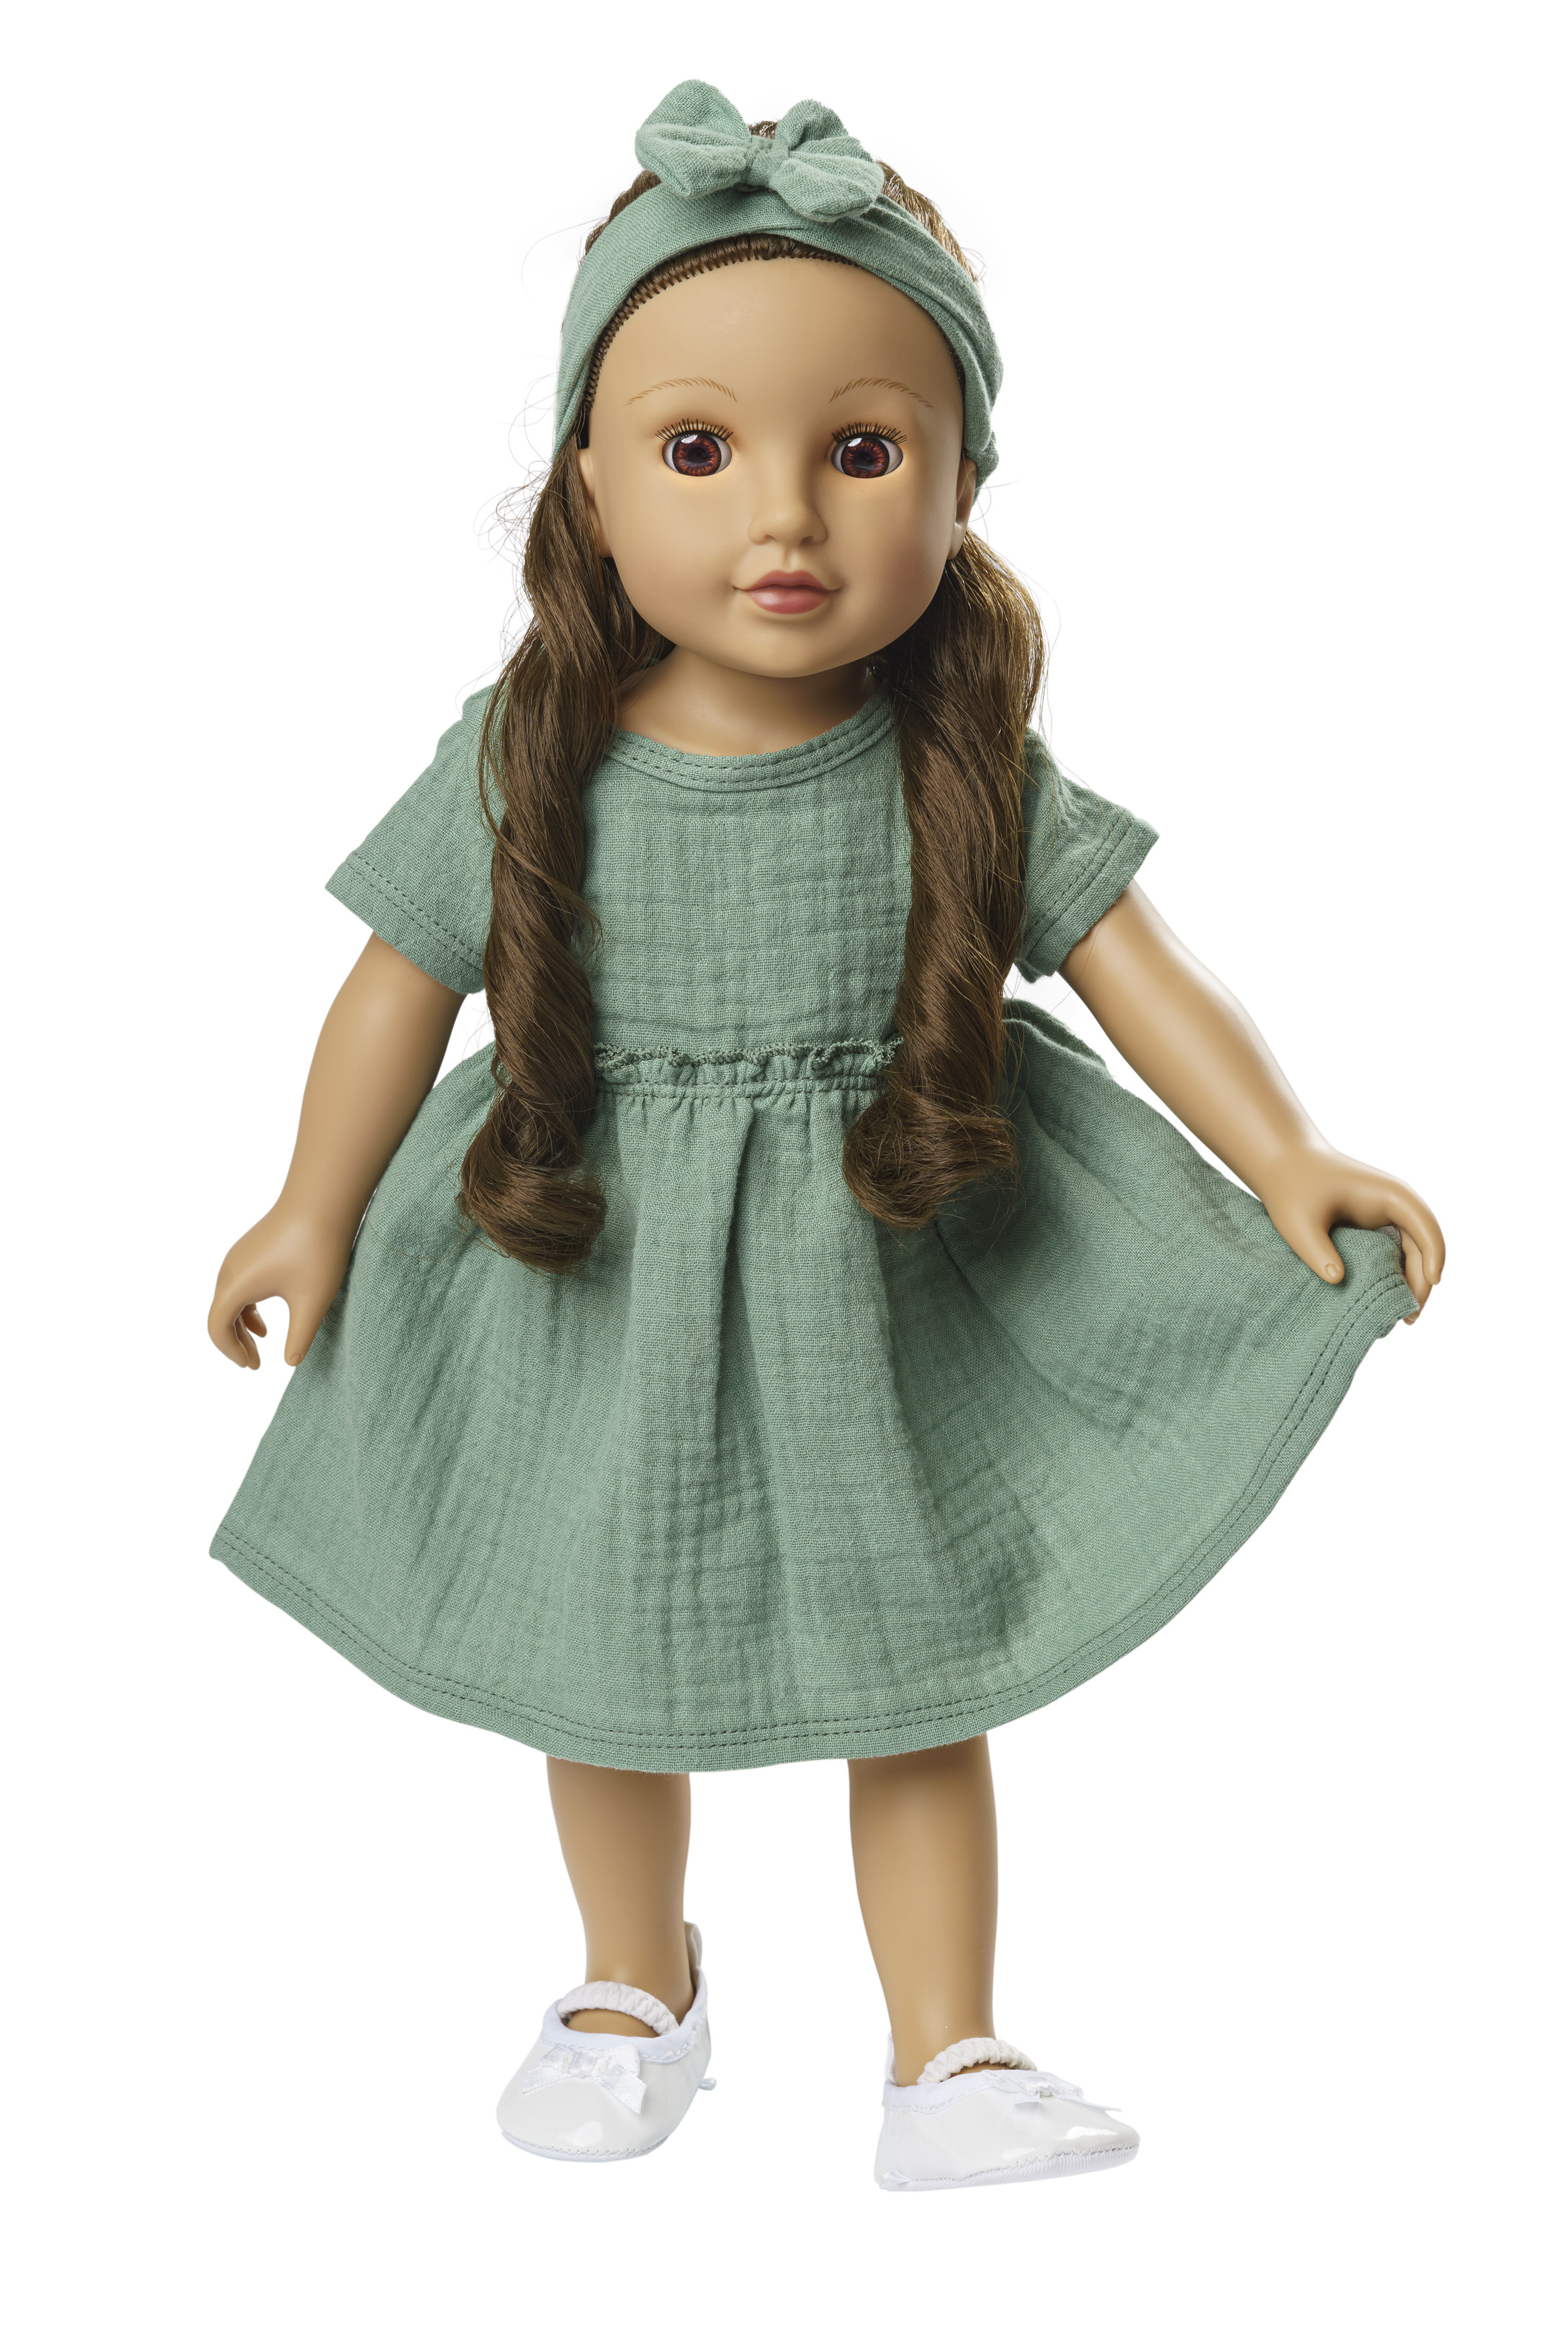 Puppenkleid aus 100 % Bio-Baumwolle mit Rüschen und Haarband, salbeigrün, 2-teilig, Gr. 35-45 cm